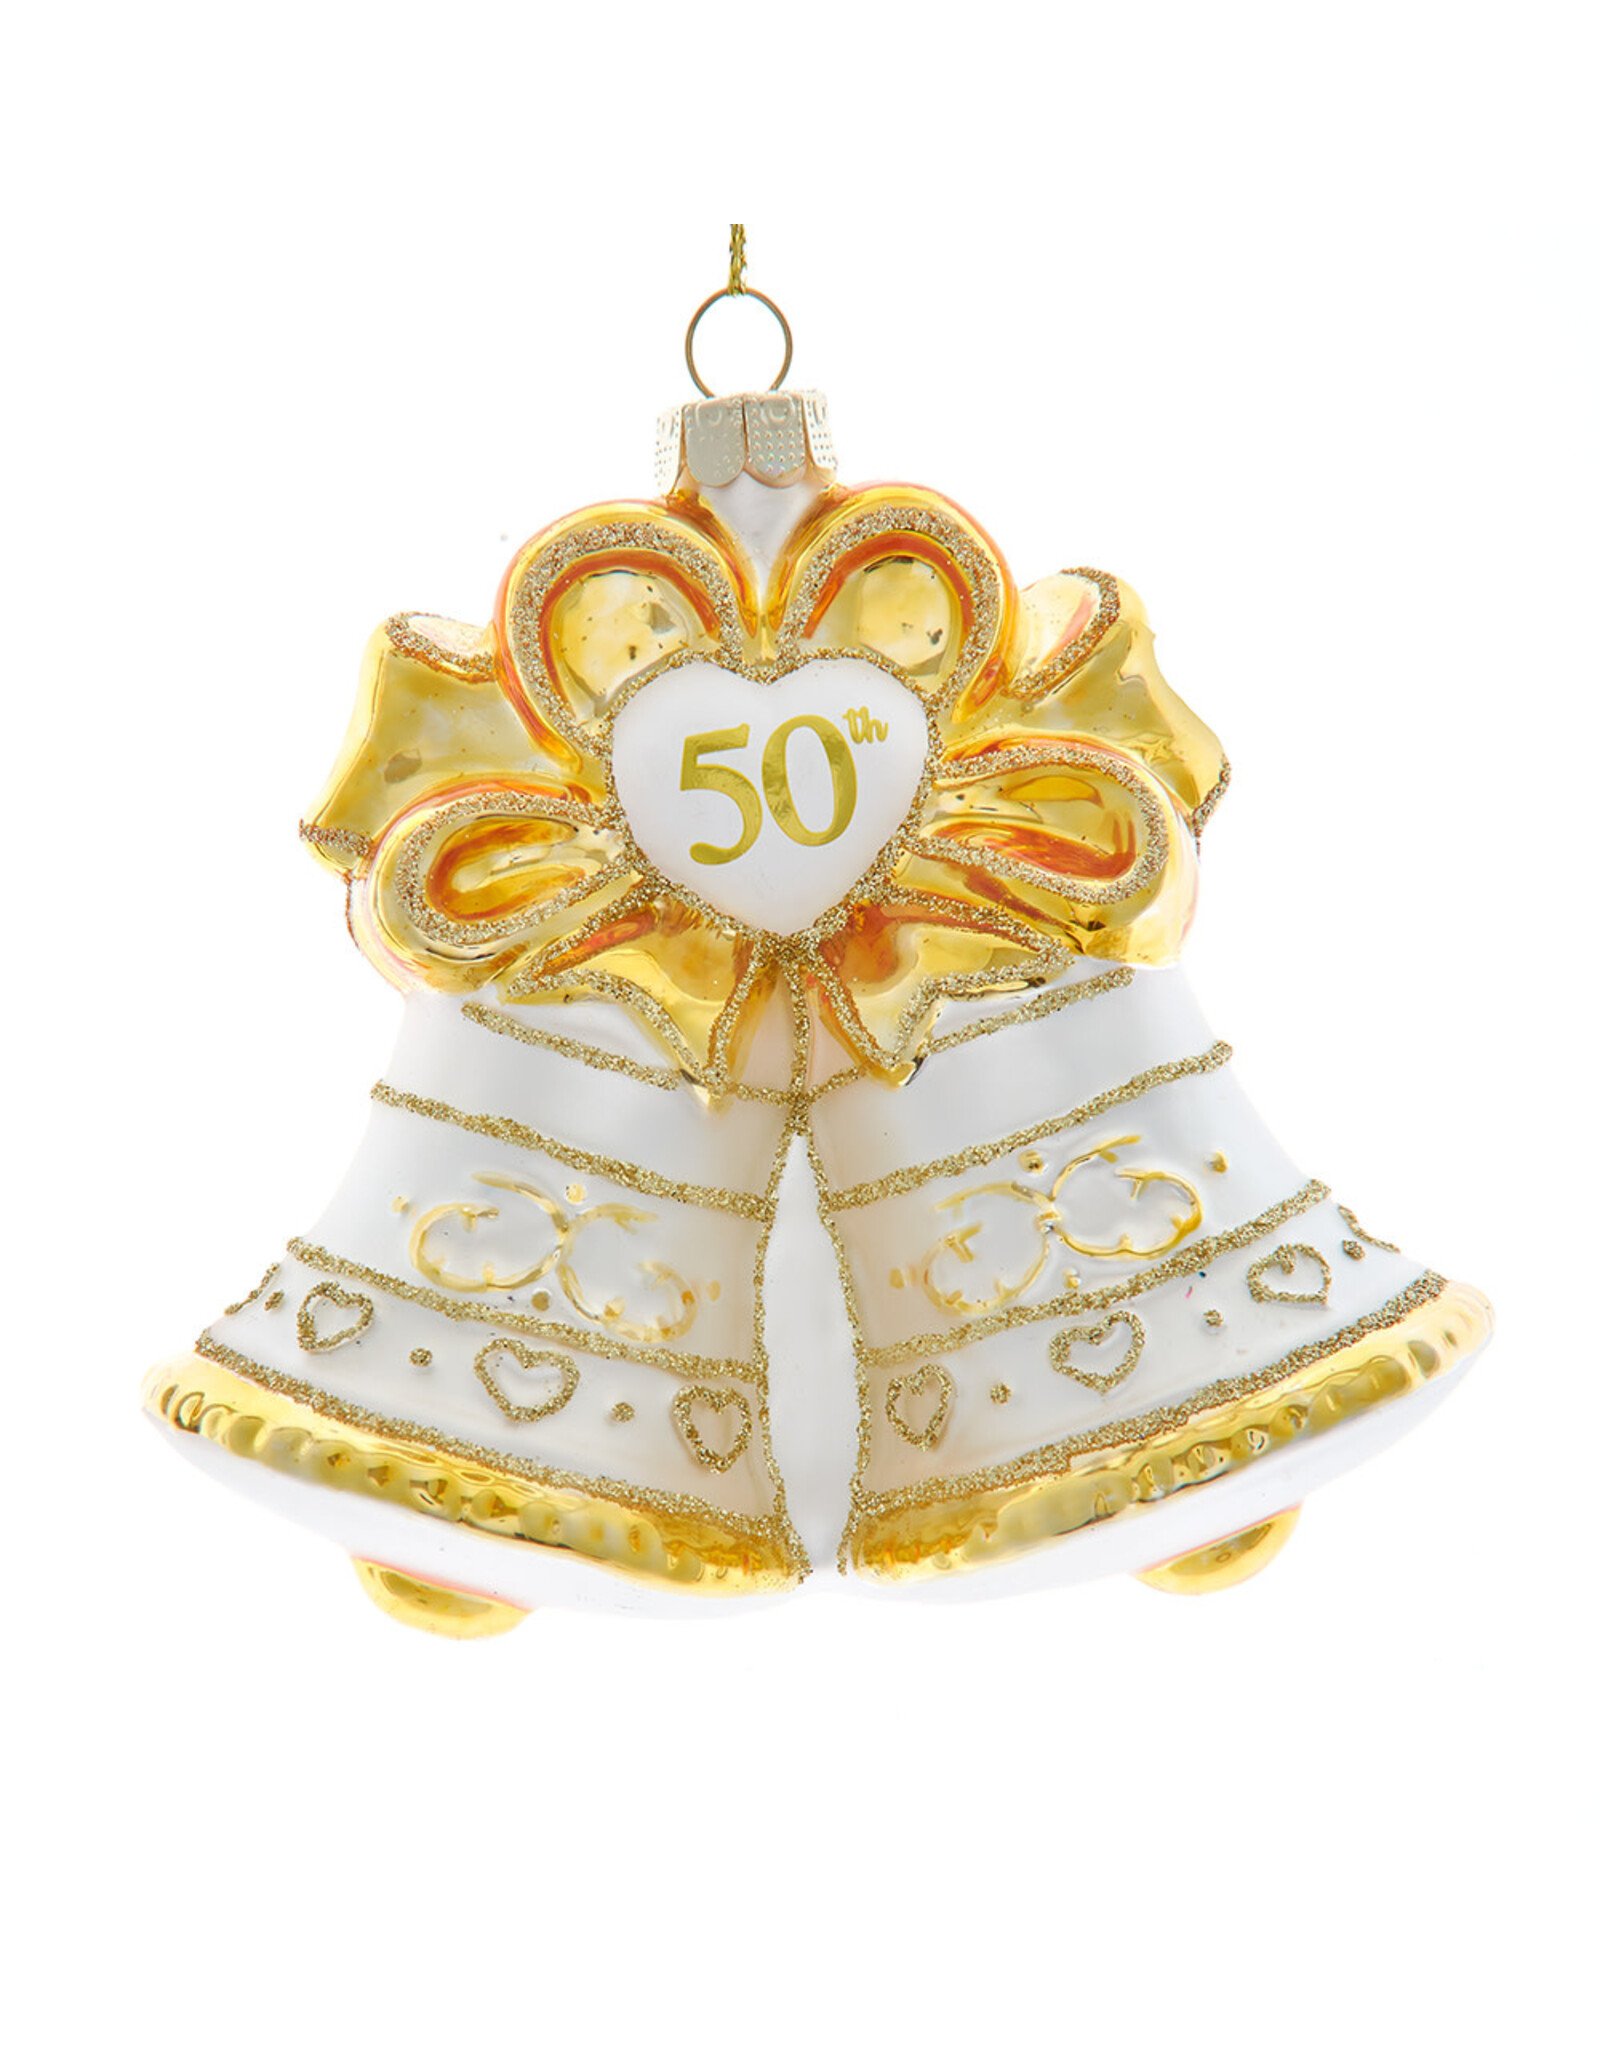 Kurt Adler Nobel Gems Glass 50th Anniversary Bell Ornament